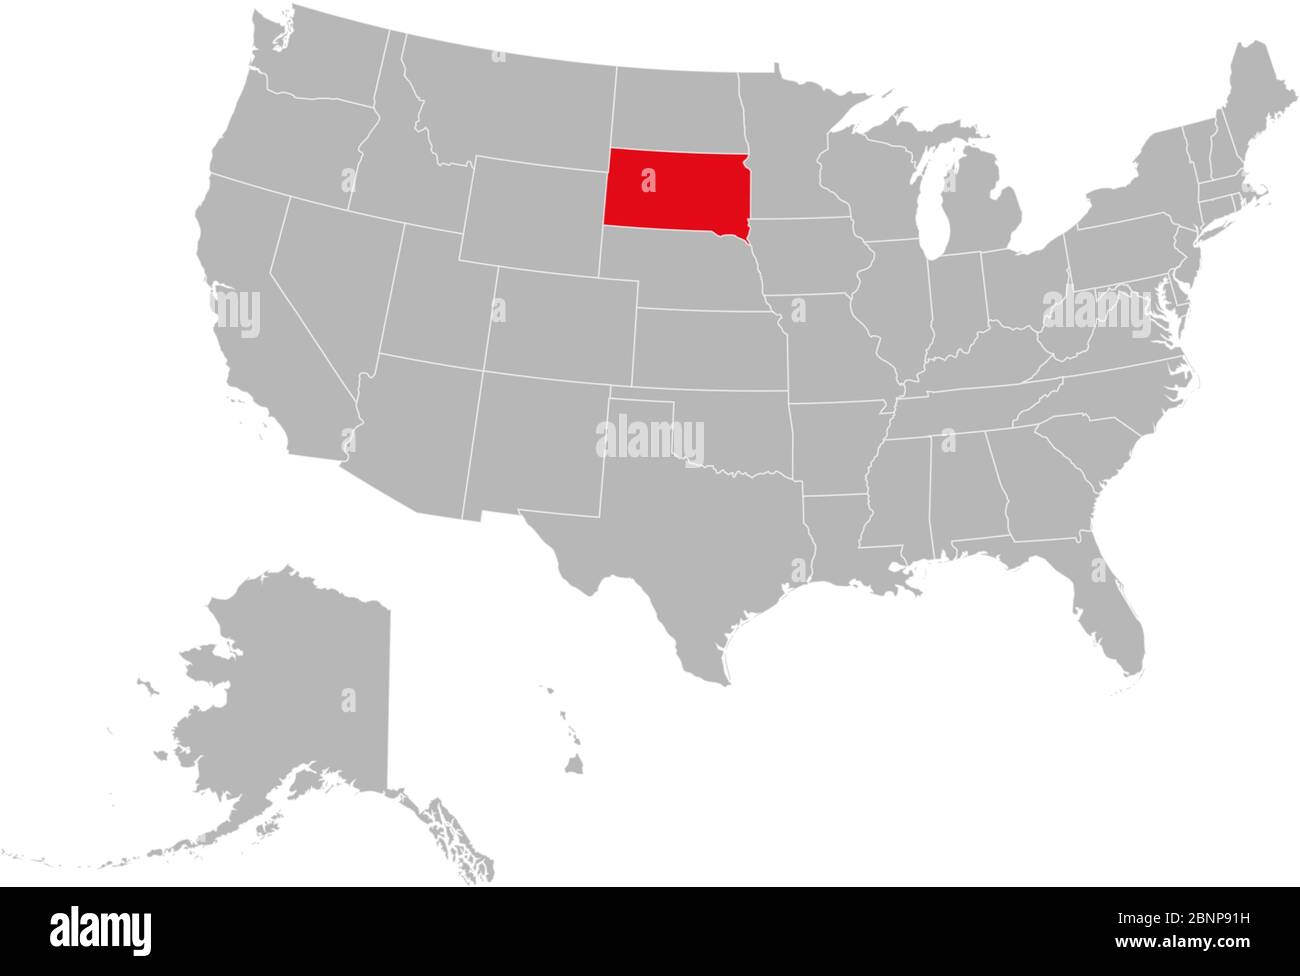 Dakota du Sud mis en évidence sur l'illustration vectorielle de la carte politique des États-Unis. Fond gris. Illustration de Vecteur